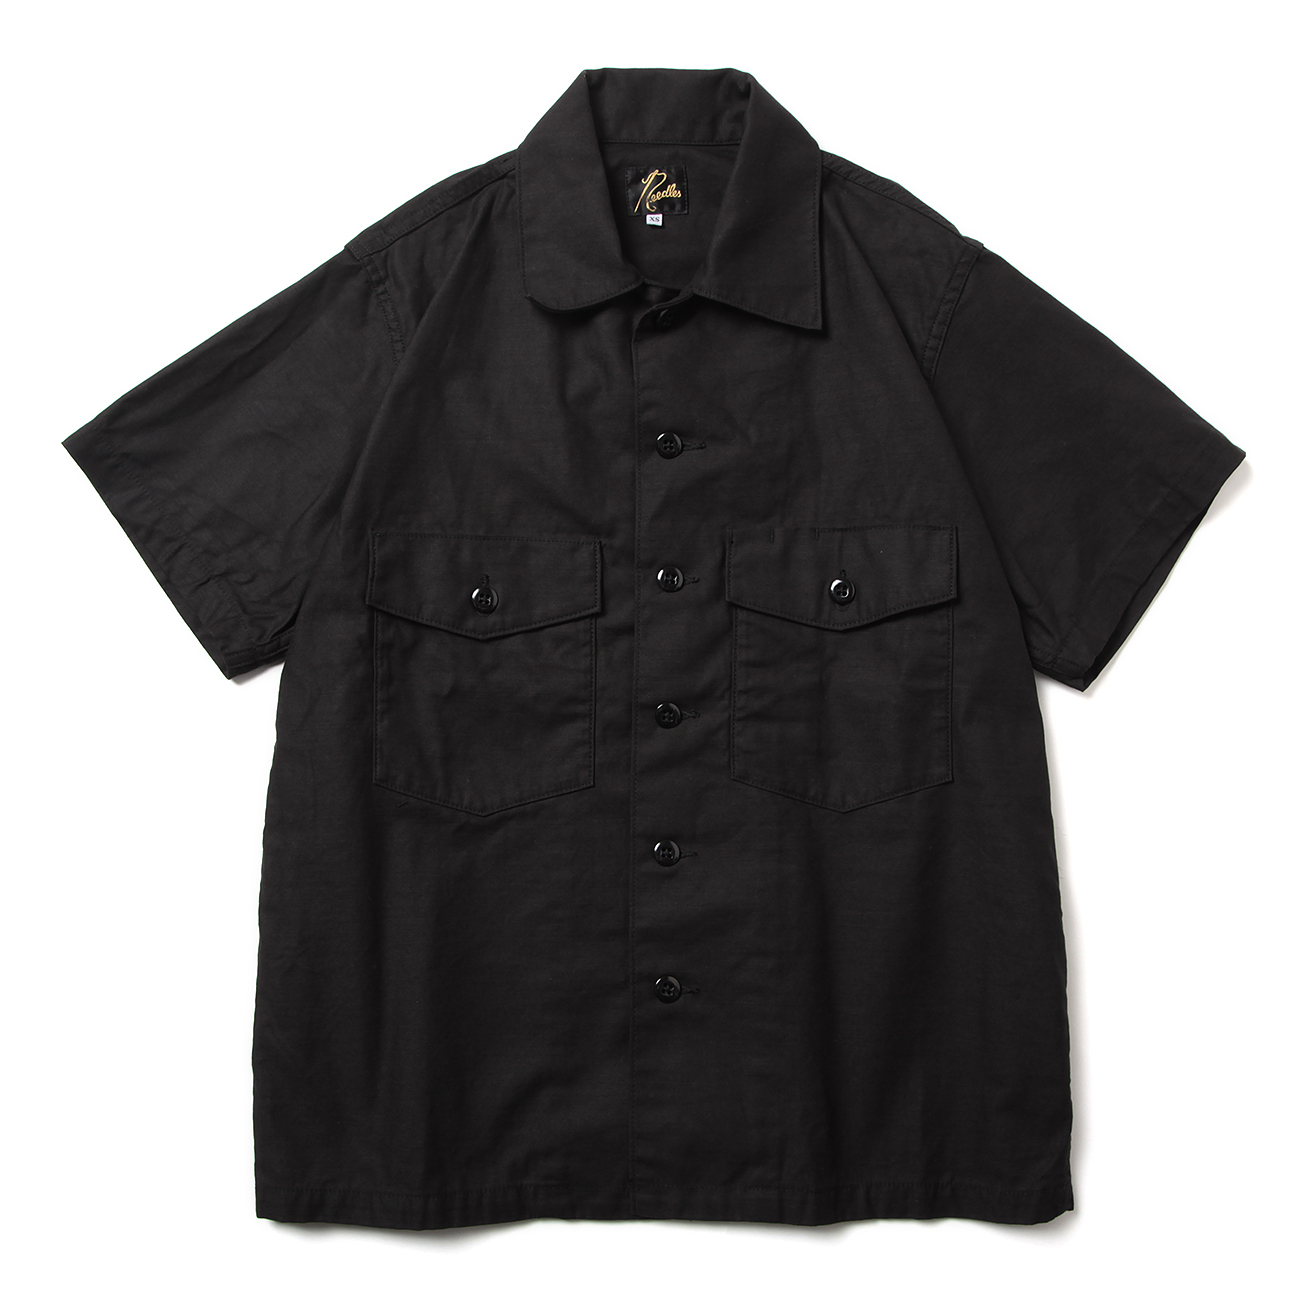 S/S Fatigue Shirt - Backsateen - Black